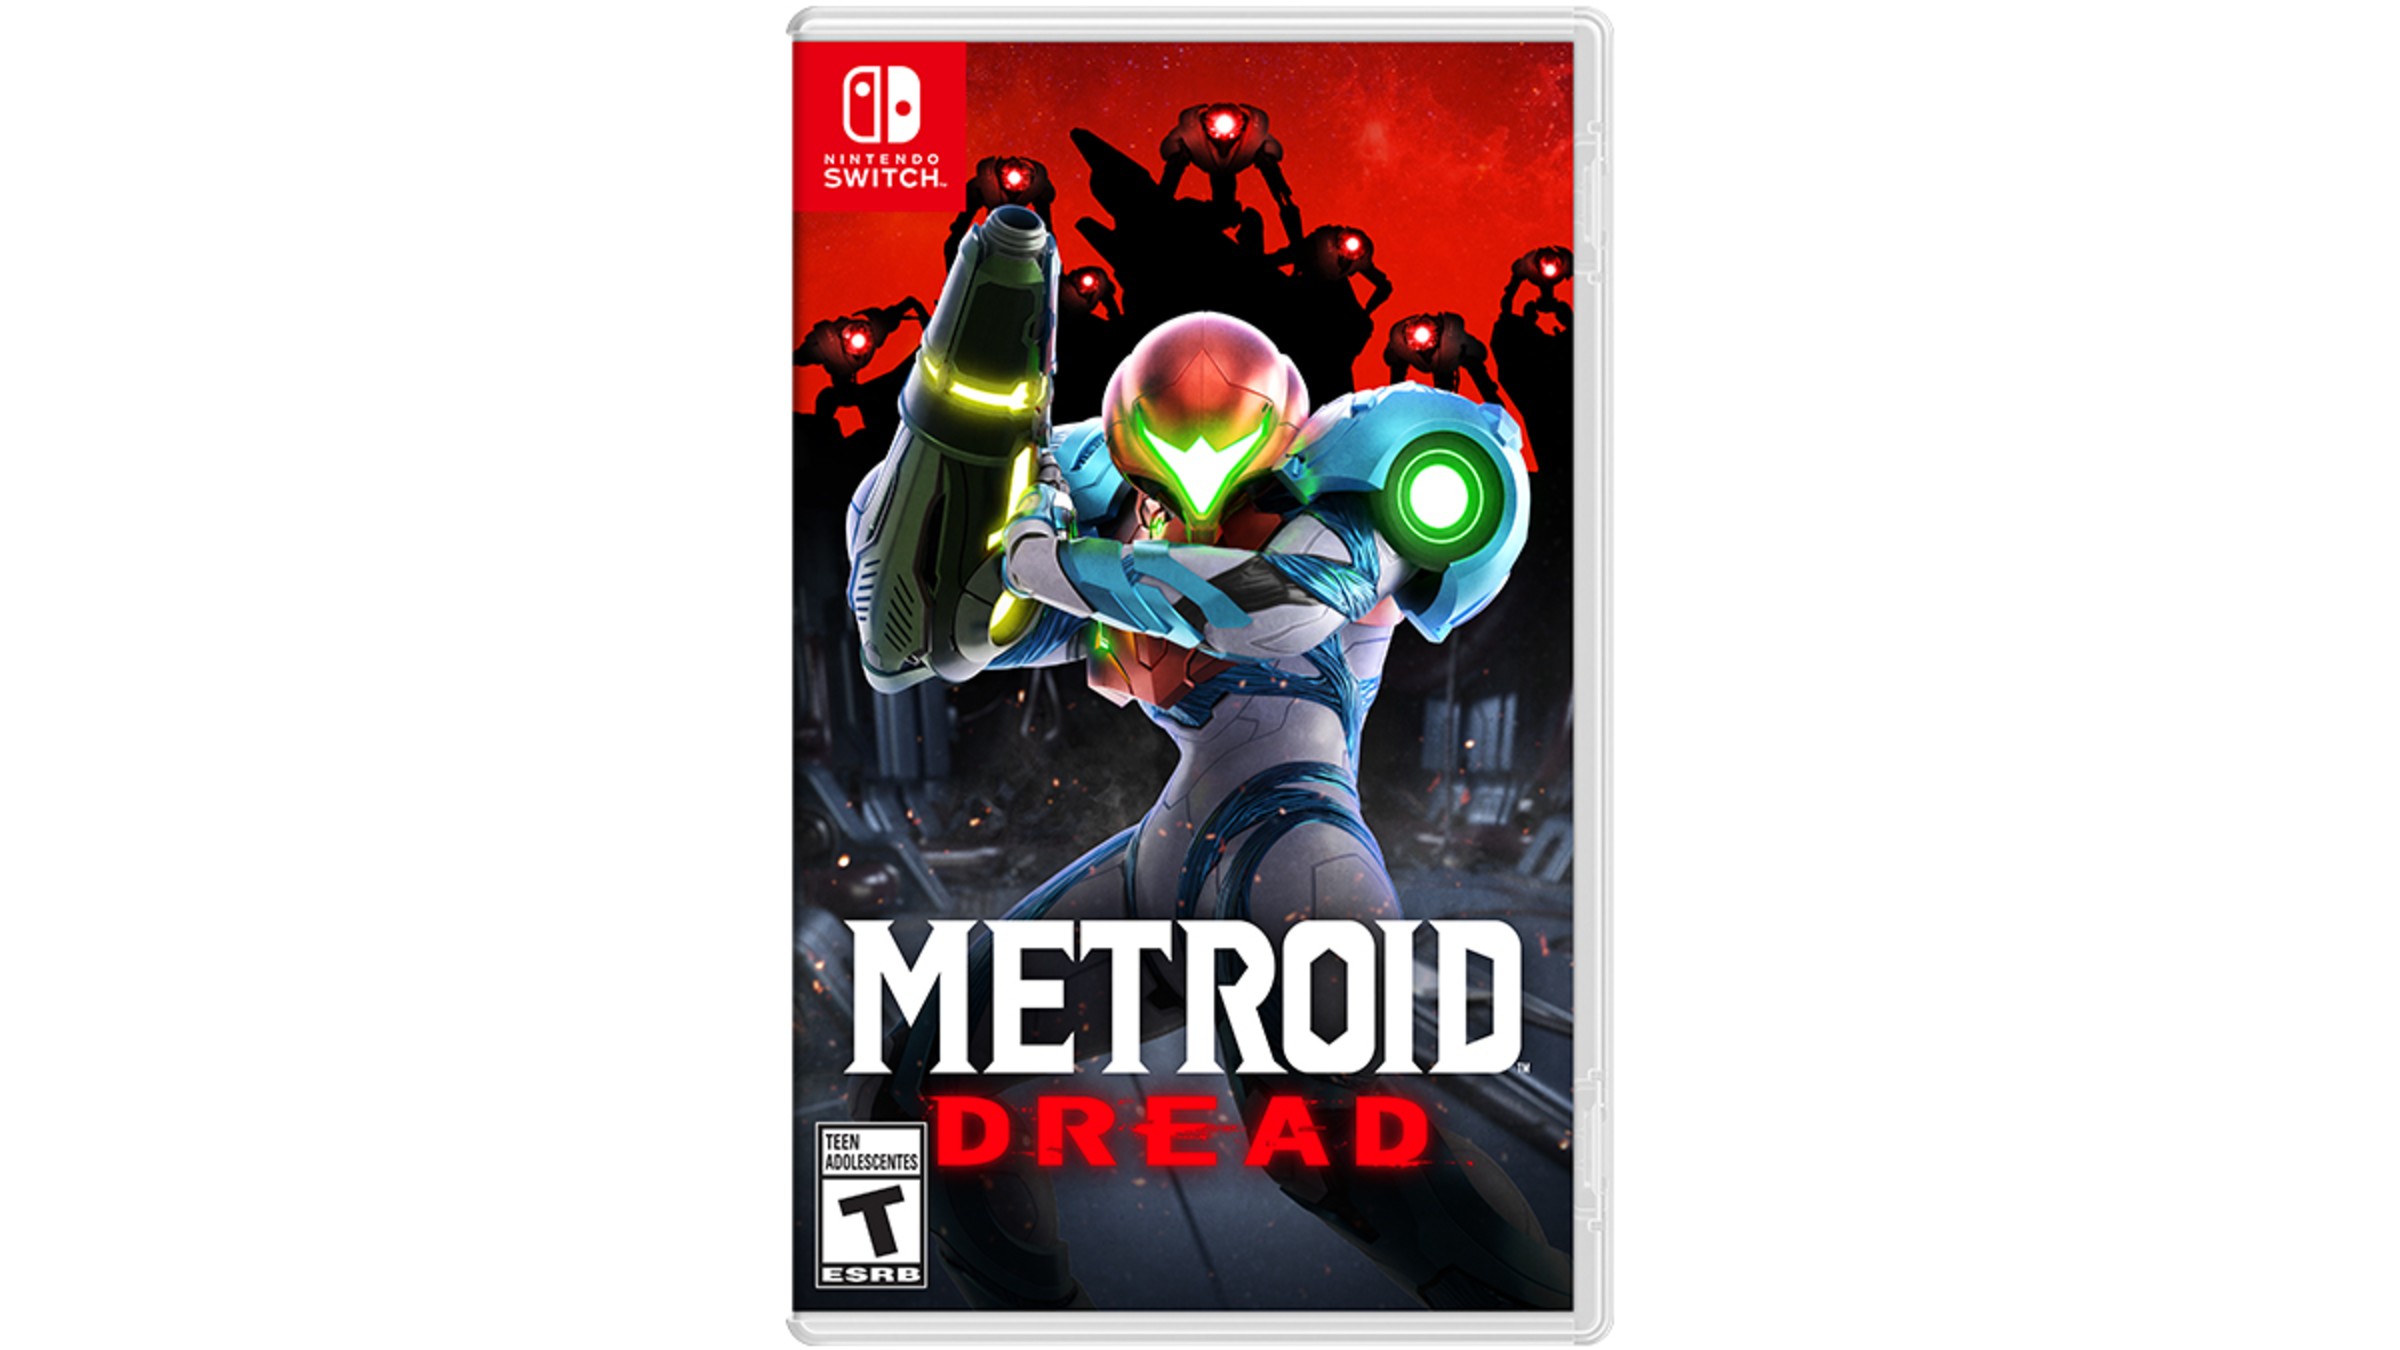 Buy Metroid Dread